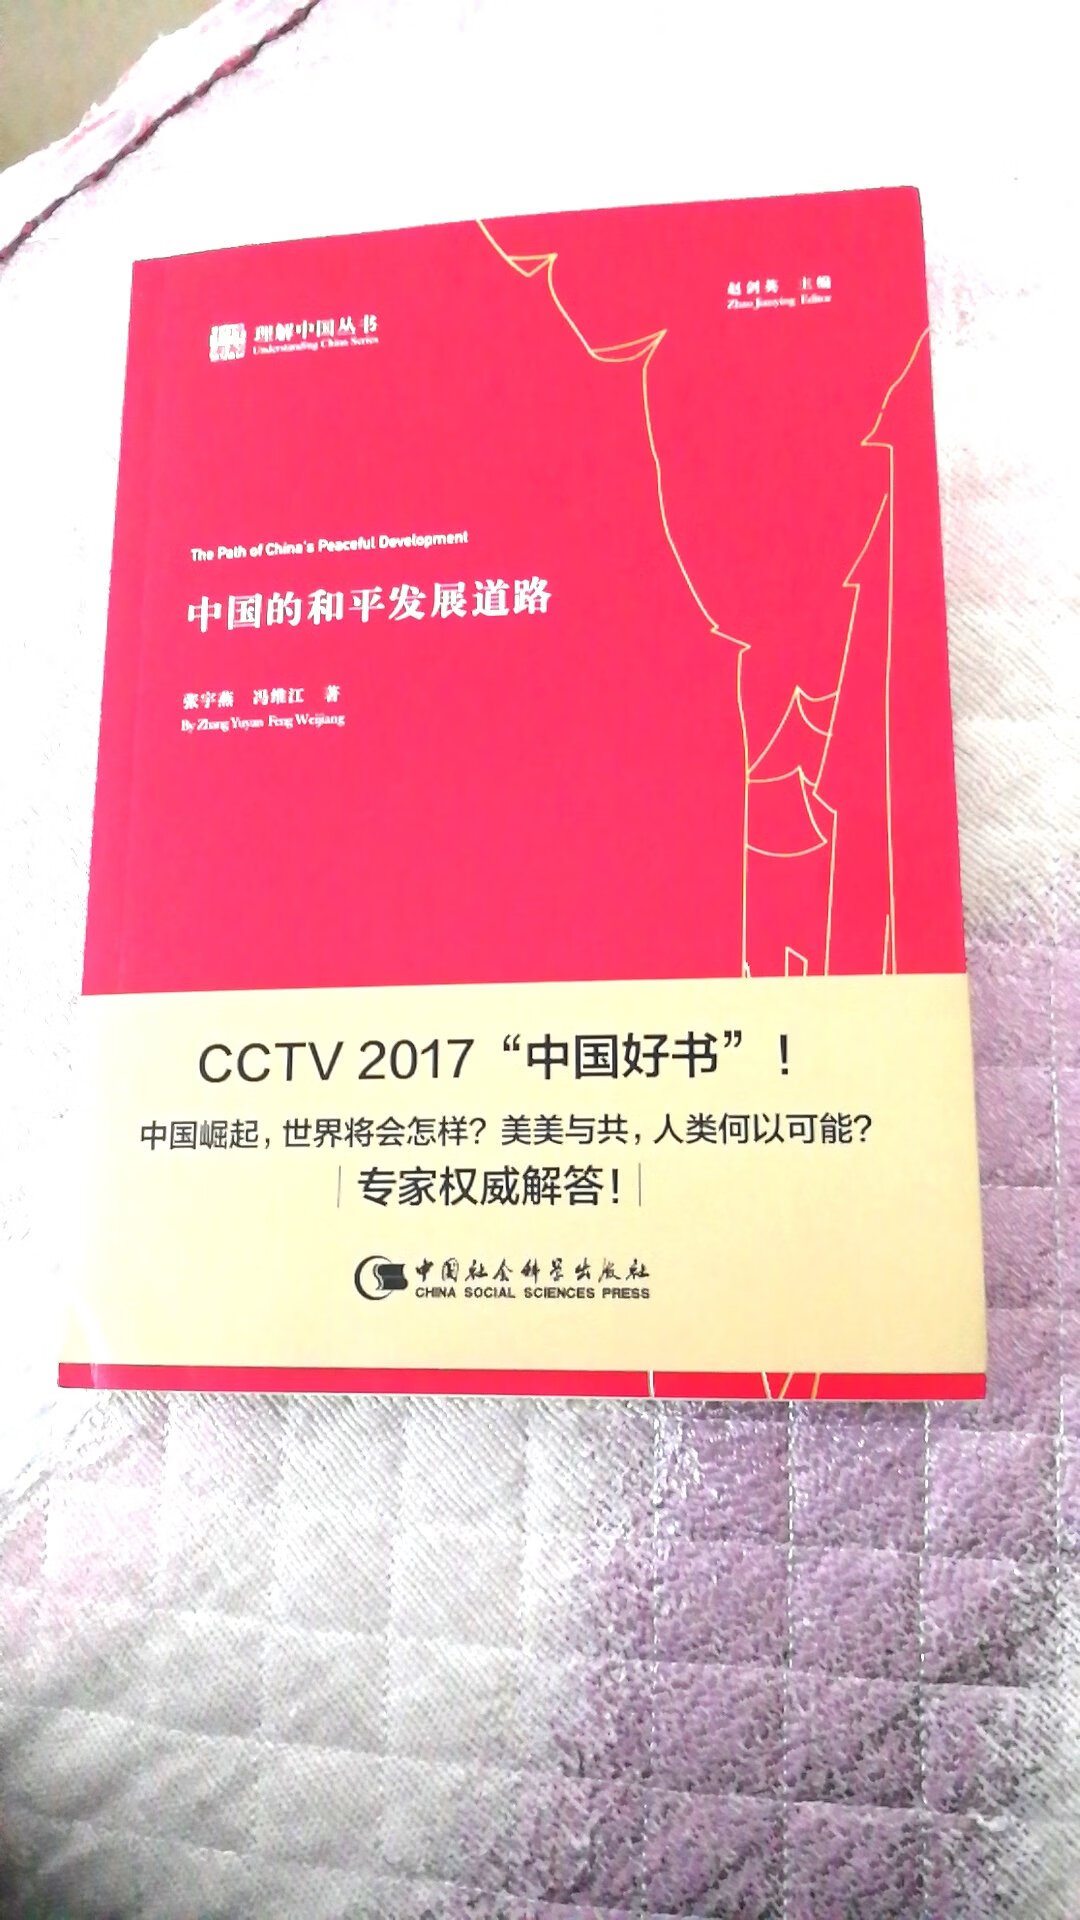 好书，2017中国好书，喜欢看，边看边品味。??